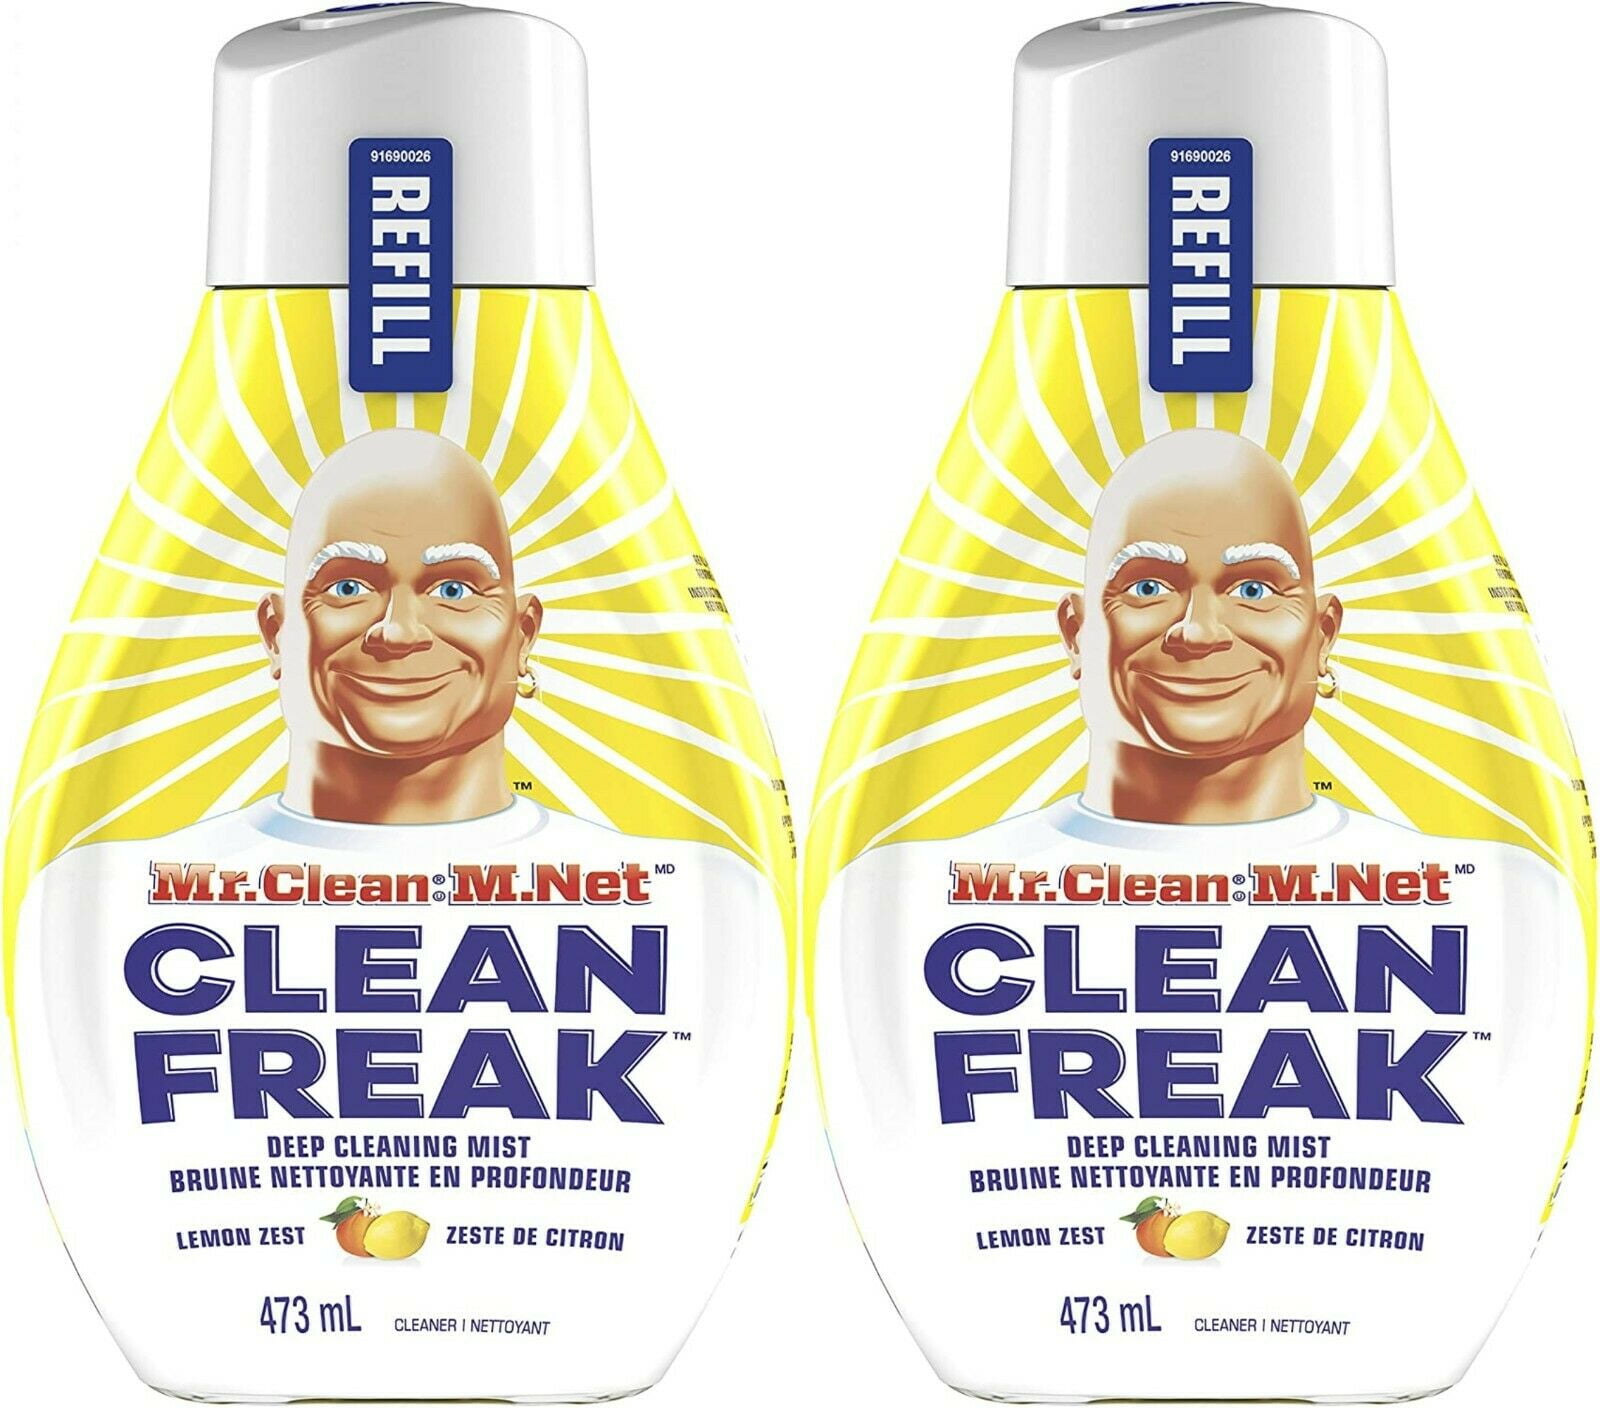 Mr. Clean Clean Freak Refill, Lemon Zest - 473 ml